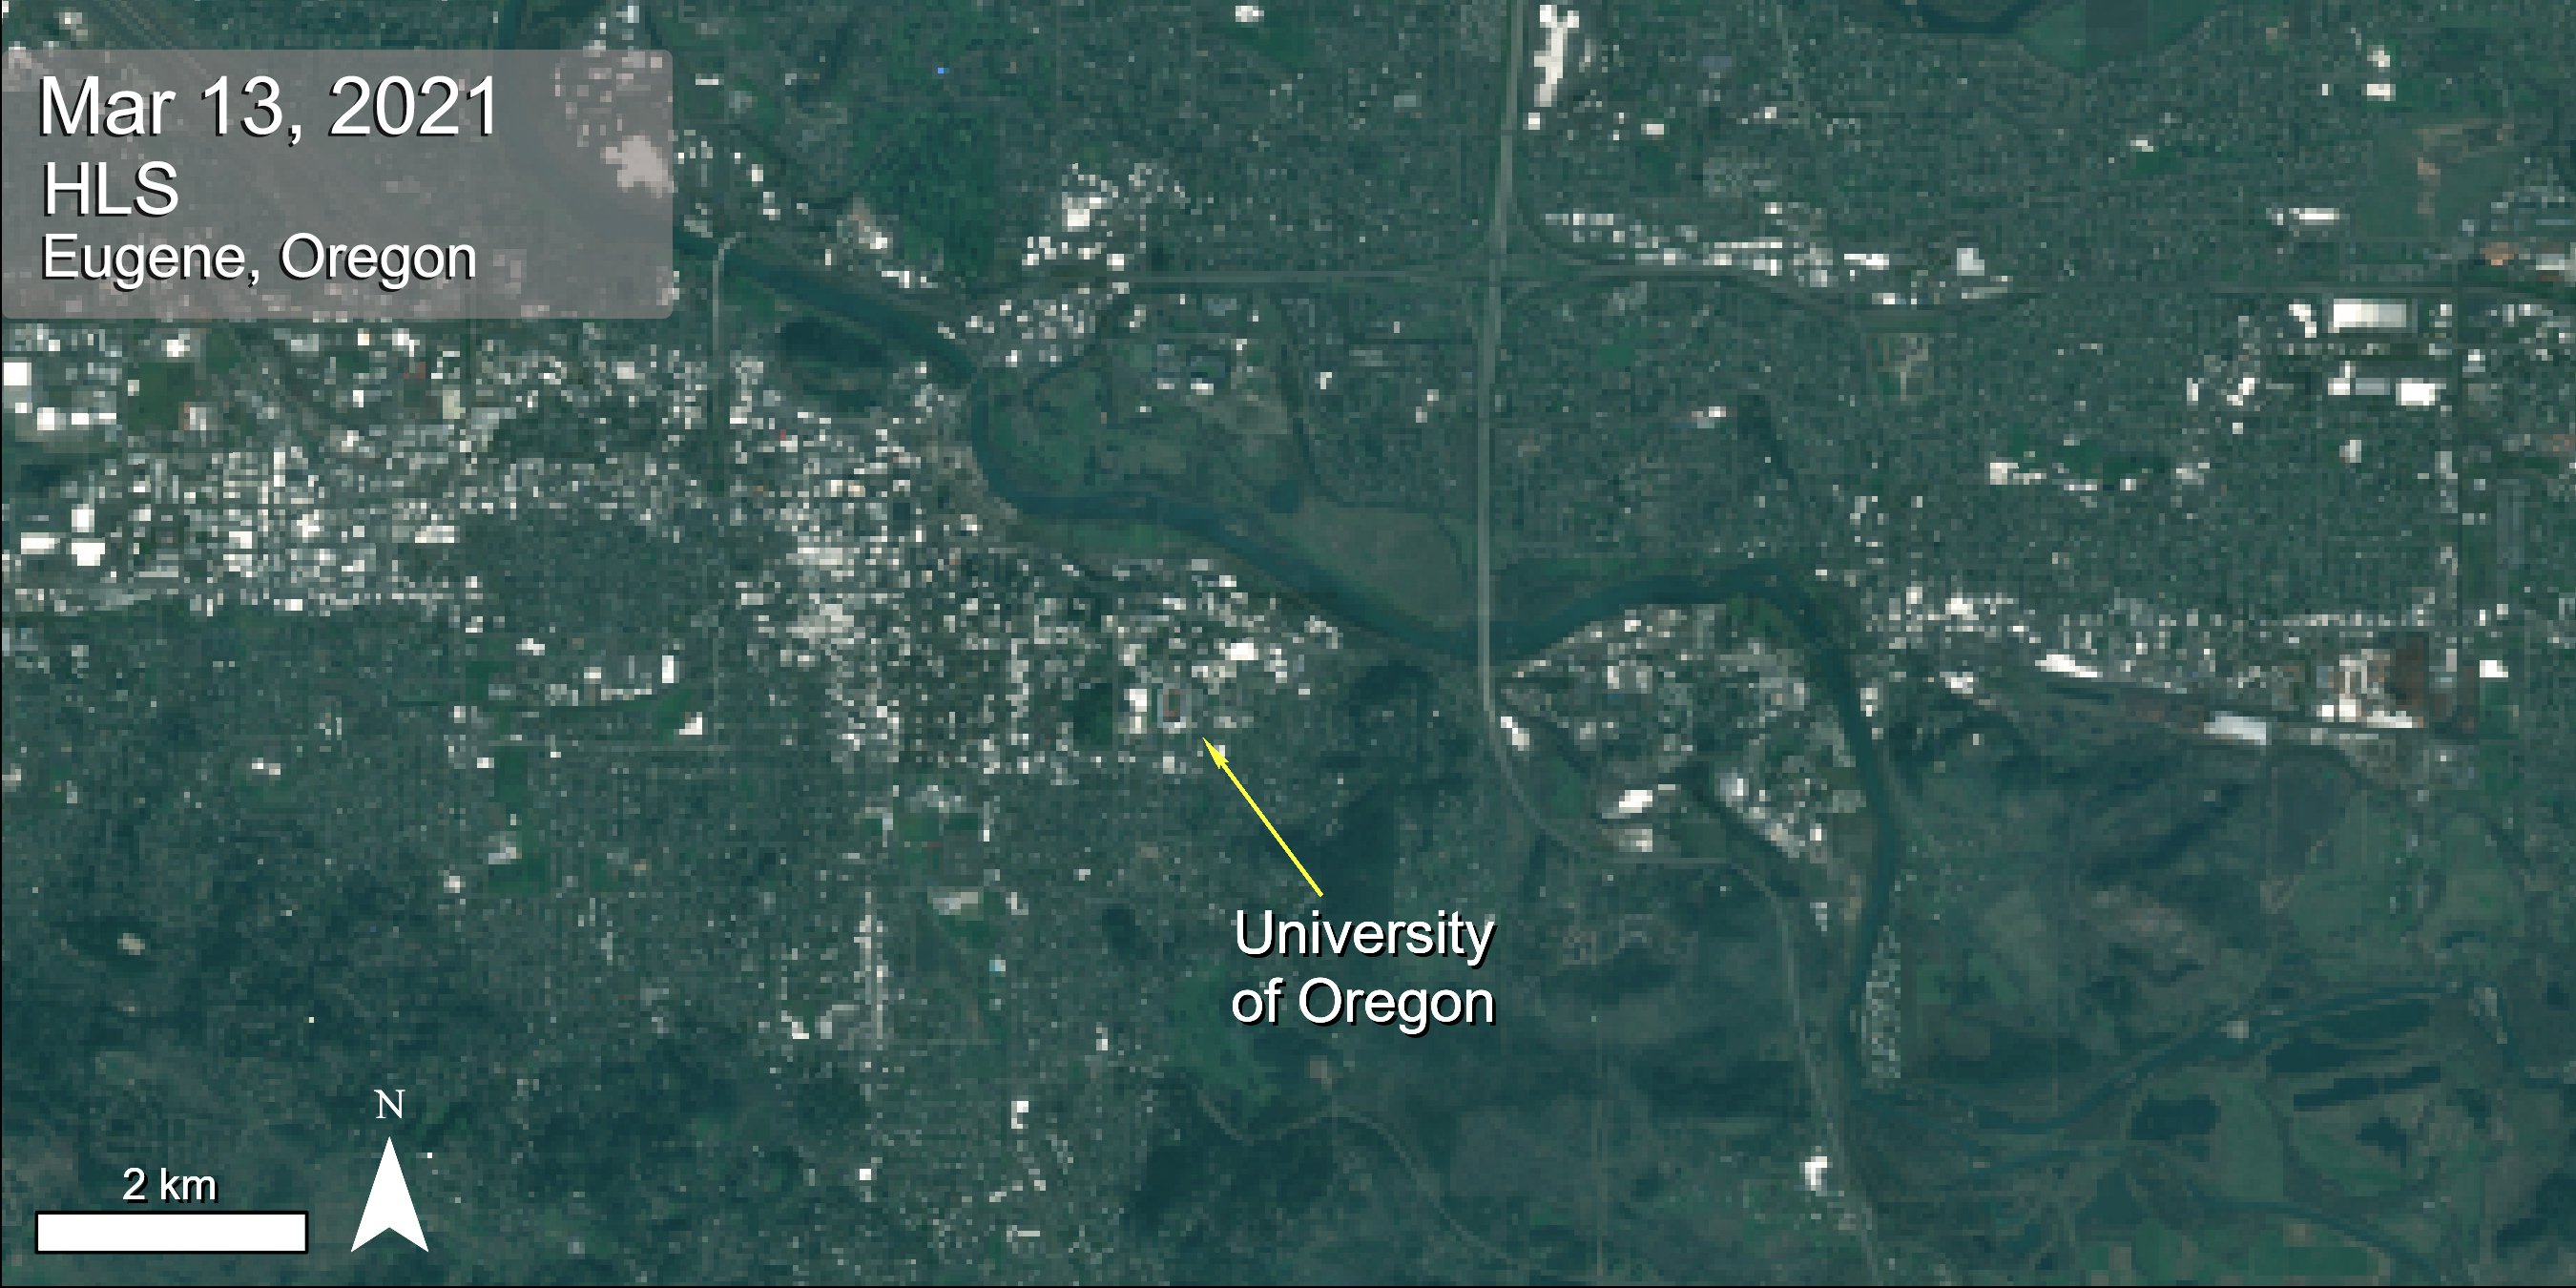 HLS surface reflectance data over Eugene, Oregon.